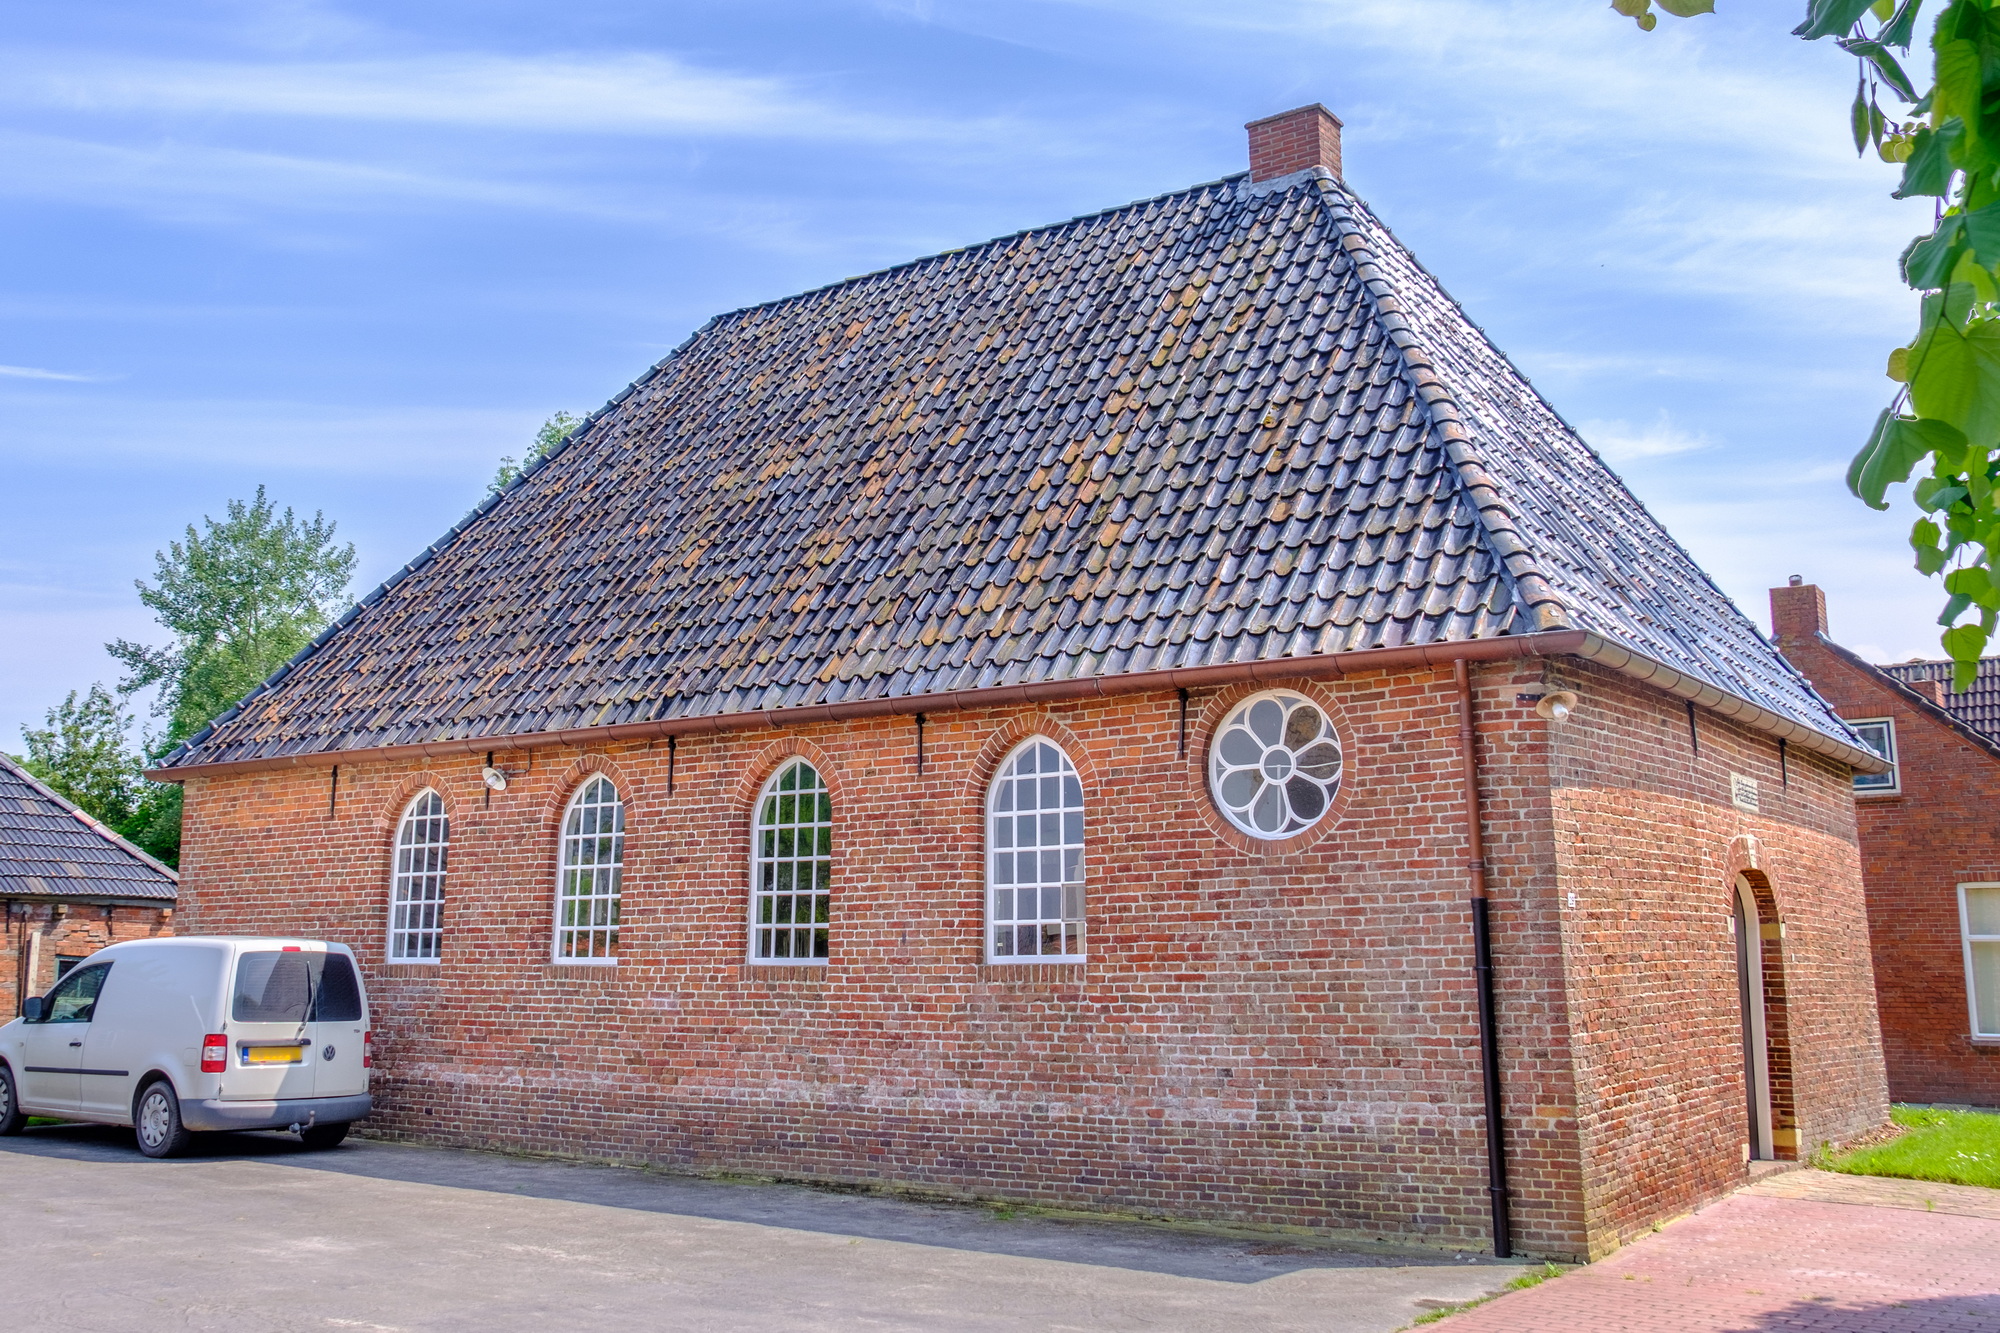 De doopsgezinde vermaning uit 1772 in Zijldijk is nog altijd in gebruik. Bron: Wikipedia, Zijldijk; foto: Hardscarf. Licentie: Creative Commons.